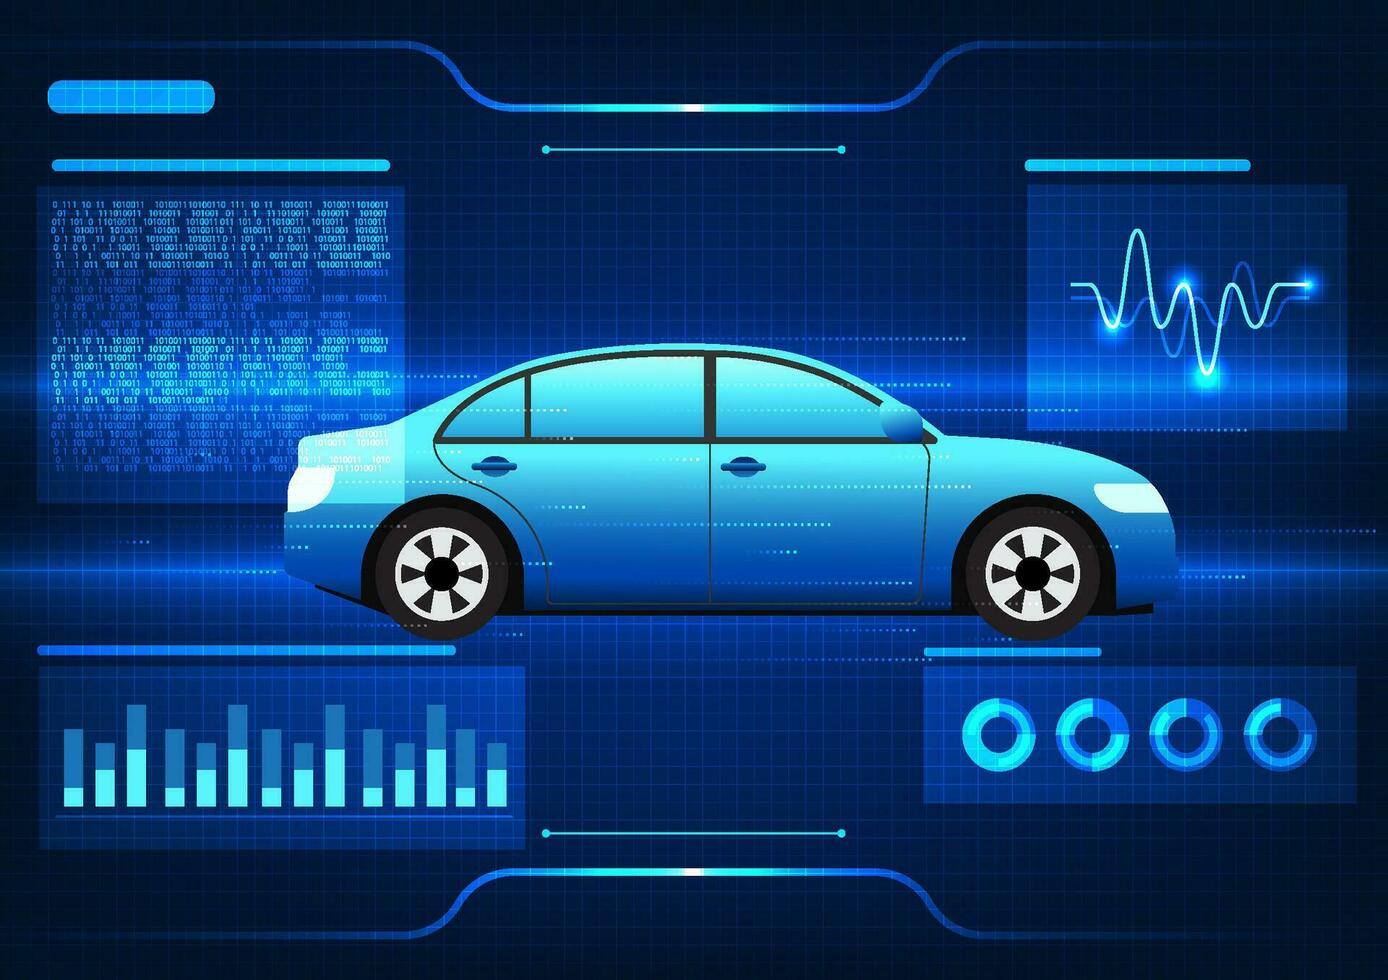 teknologi den där integrerar med de bil i beställa till tillgång de prestanda av de bilens system och ny innovationer hjälper analysera problem snabbt. de bil är skannade. vektor